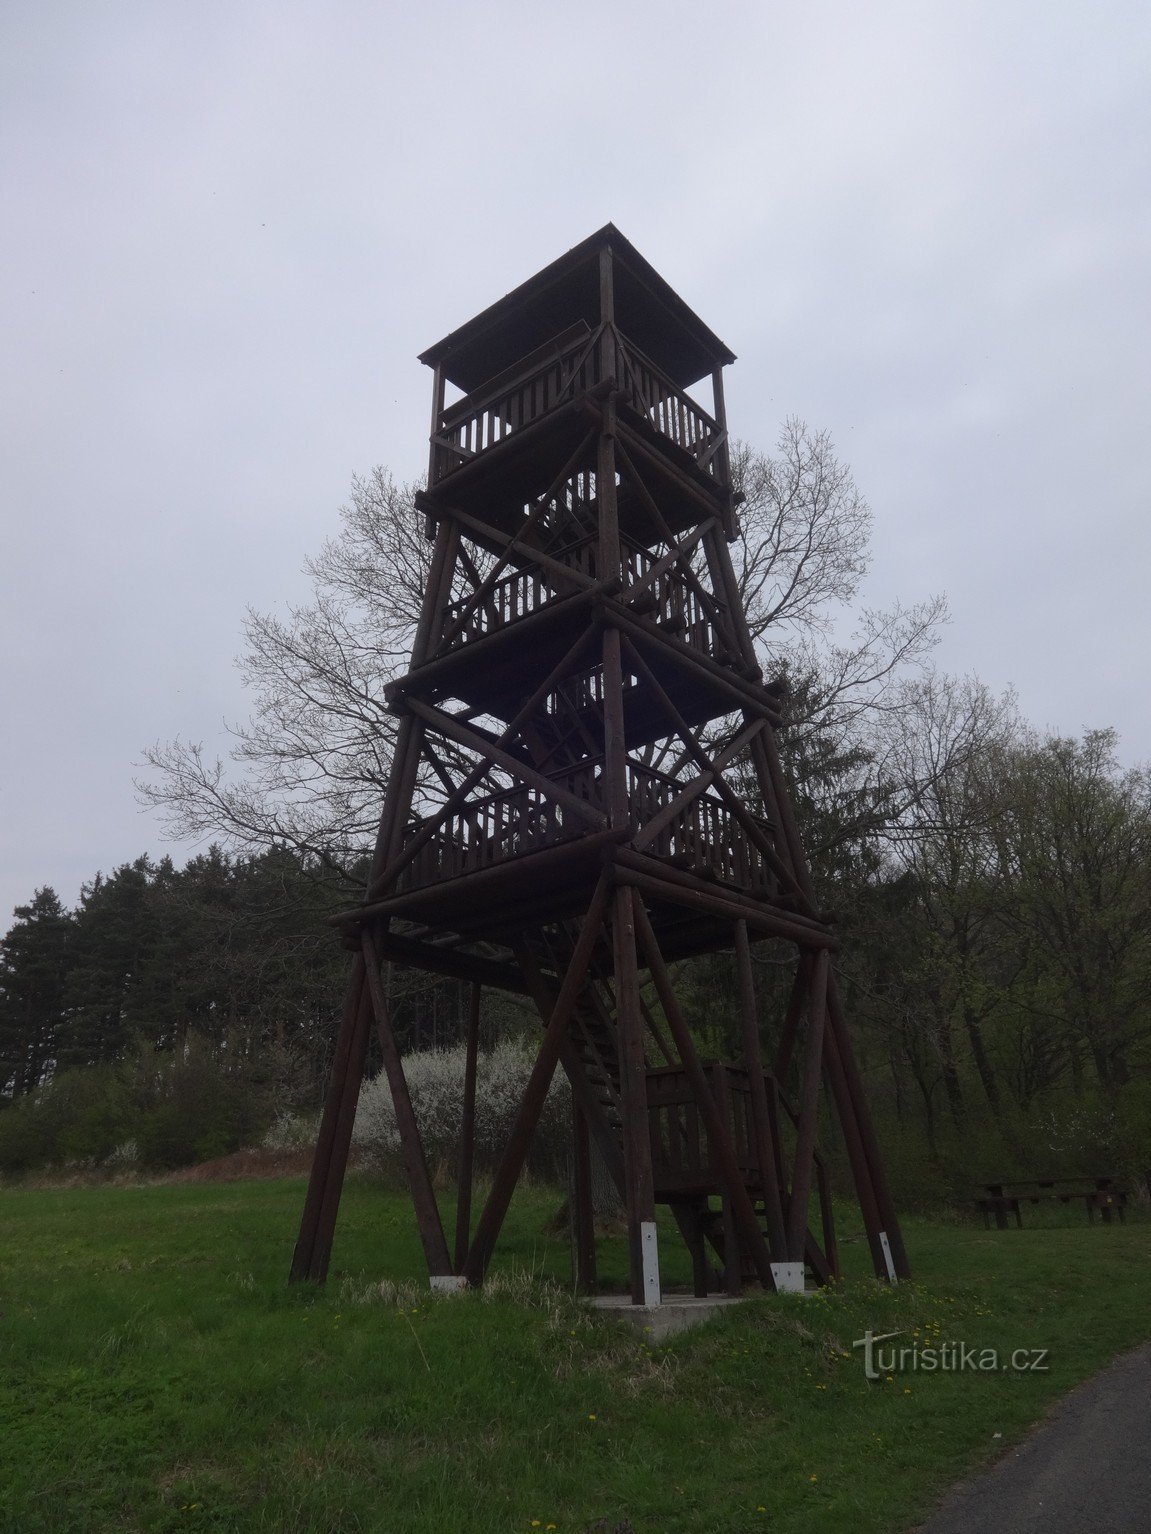 Torre de observação Pod Vojanská perto de Bystřice pod Lopeníek